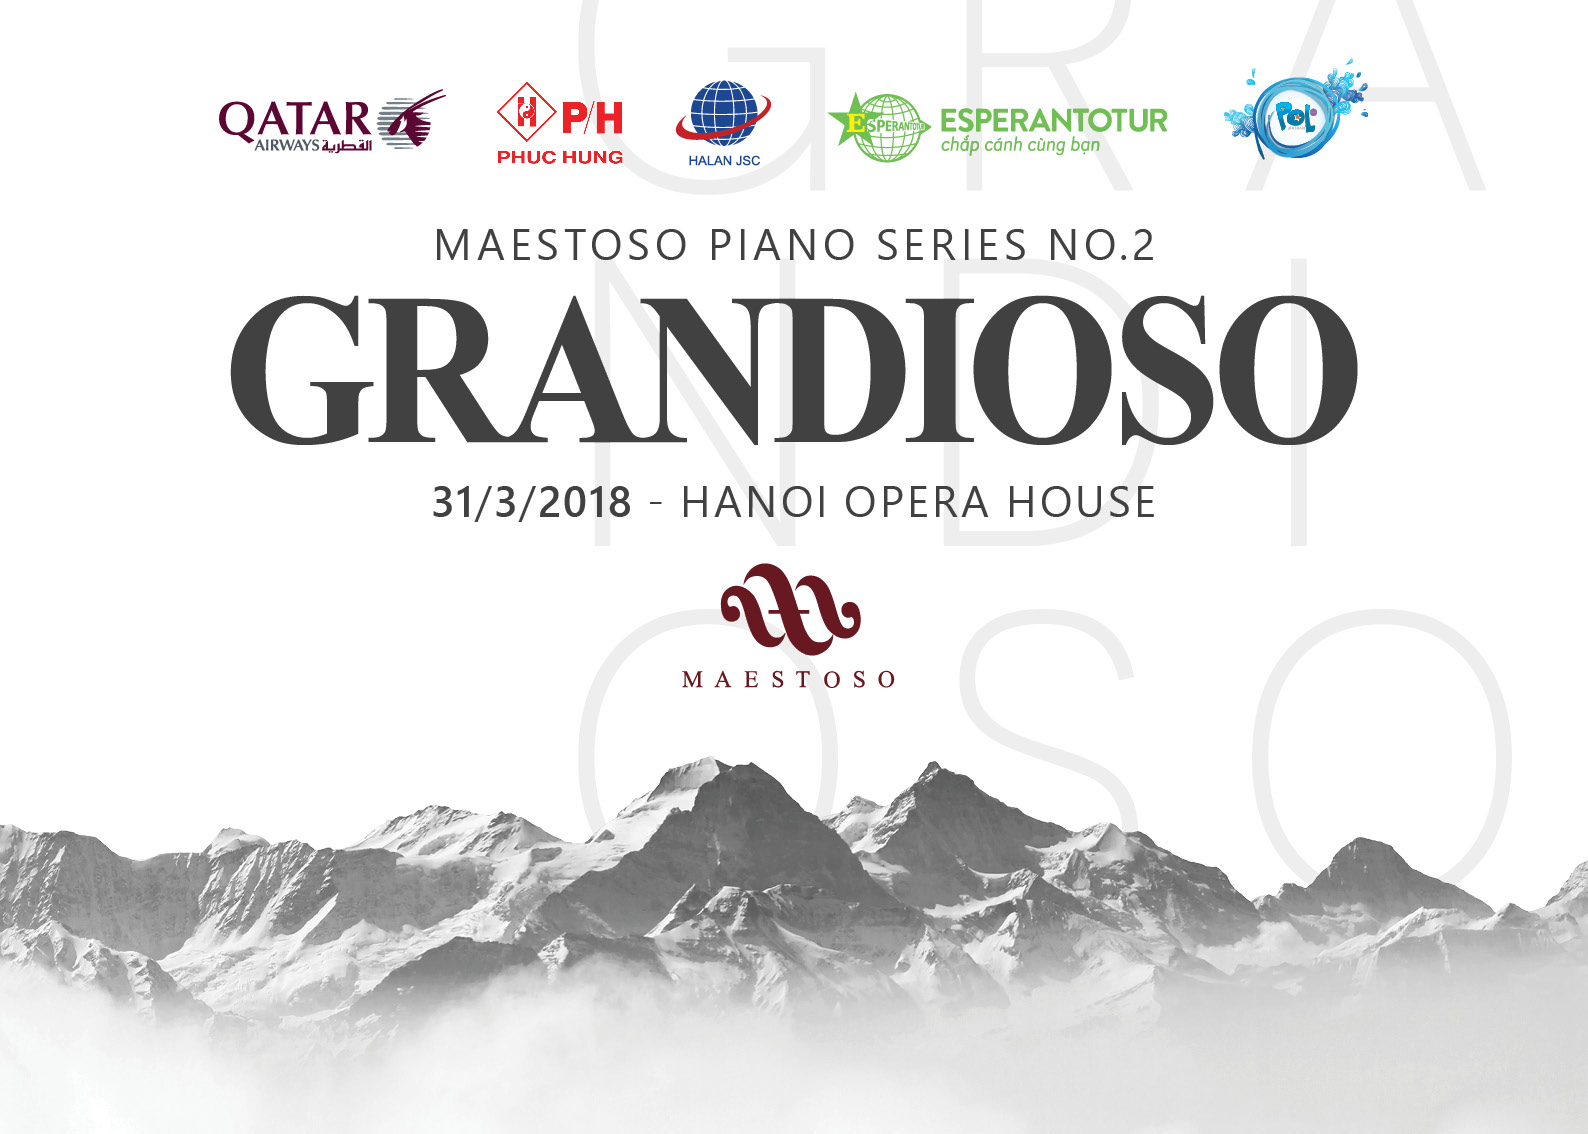 2018.03.31 - Piano Series No. 2 "Grandioso"